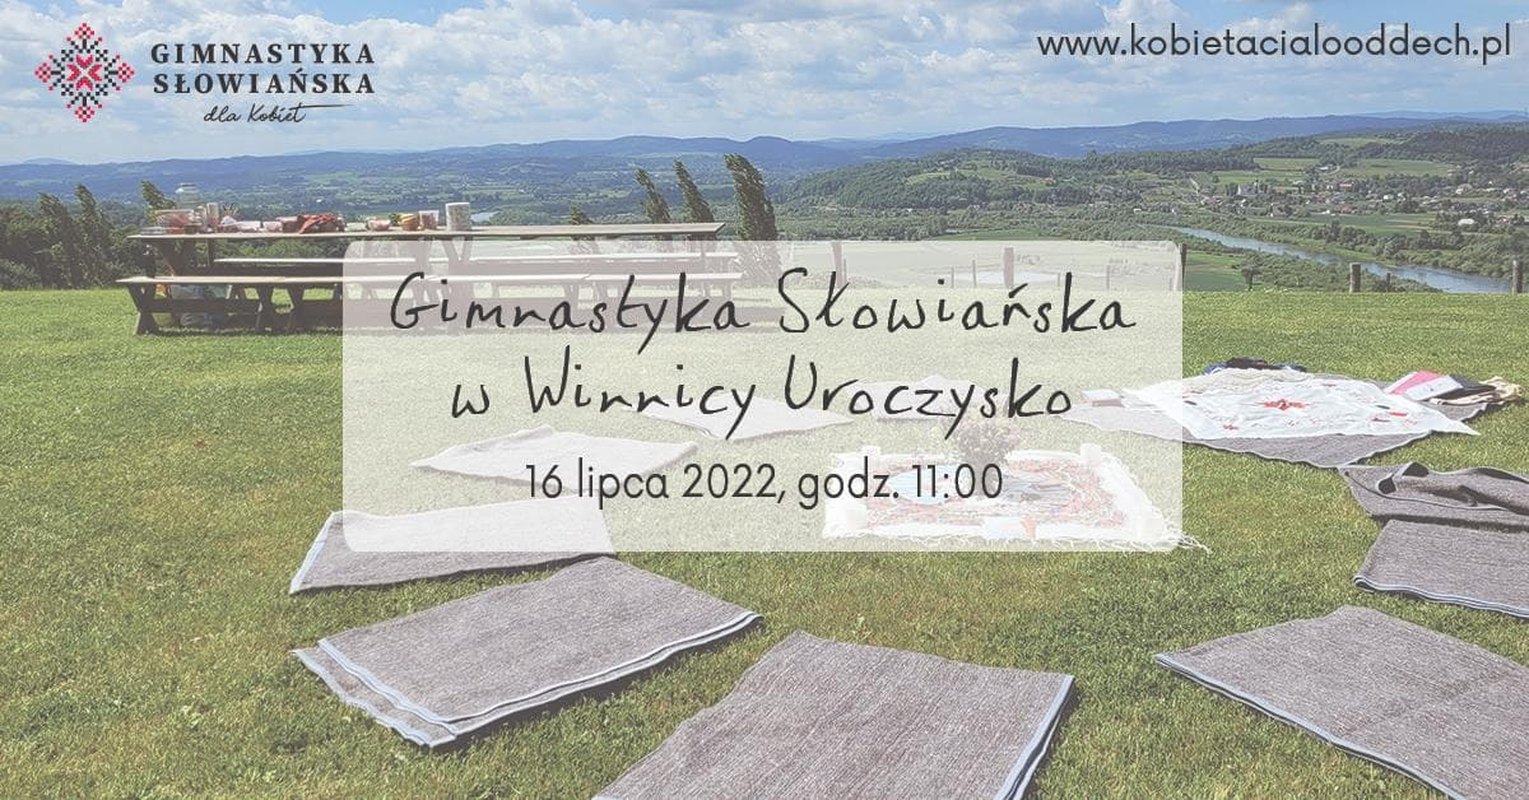 Gimnastyka Słowiańska w Winnicy Uroczysko